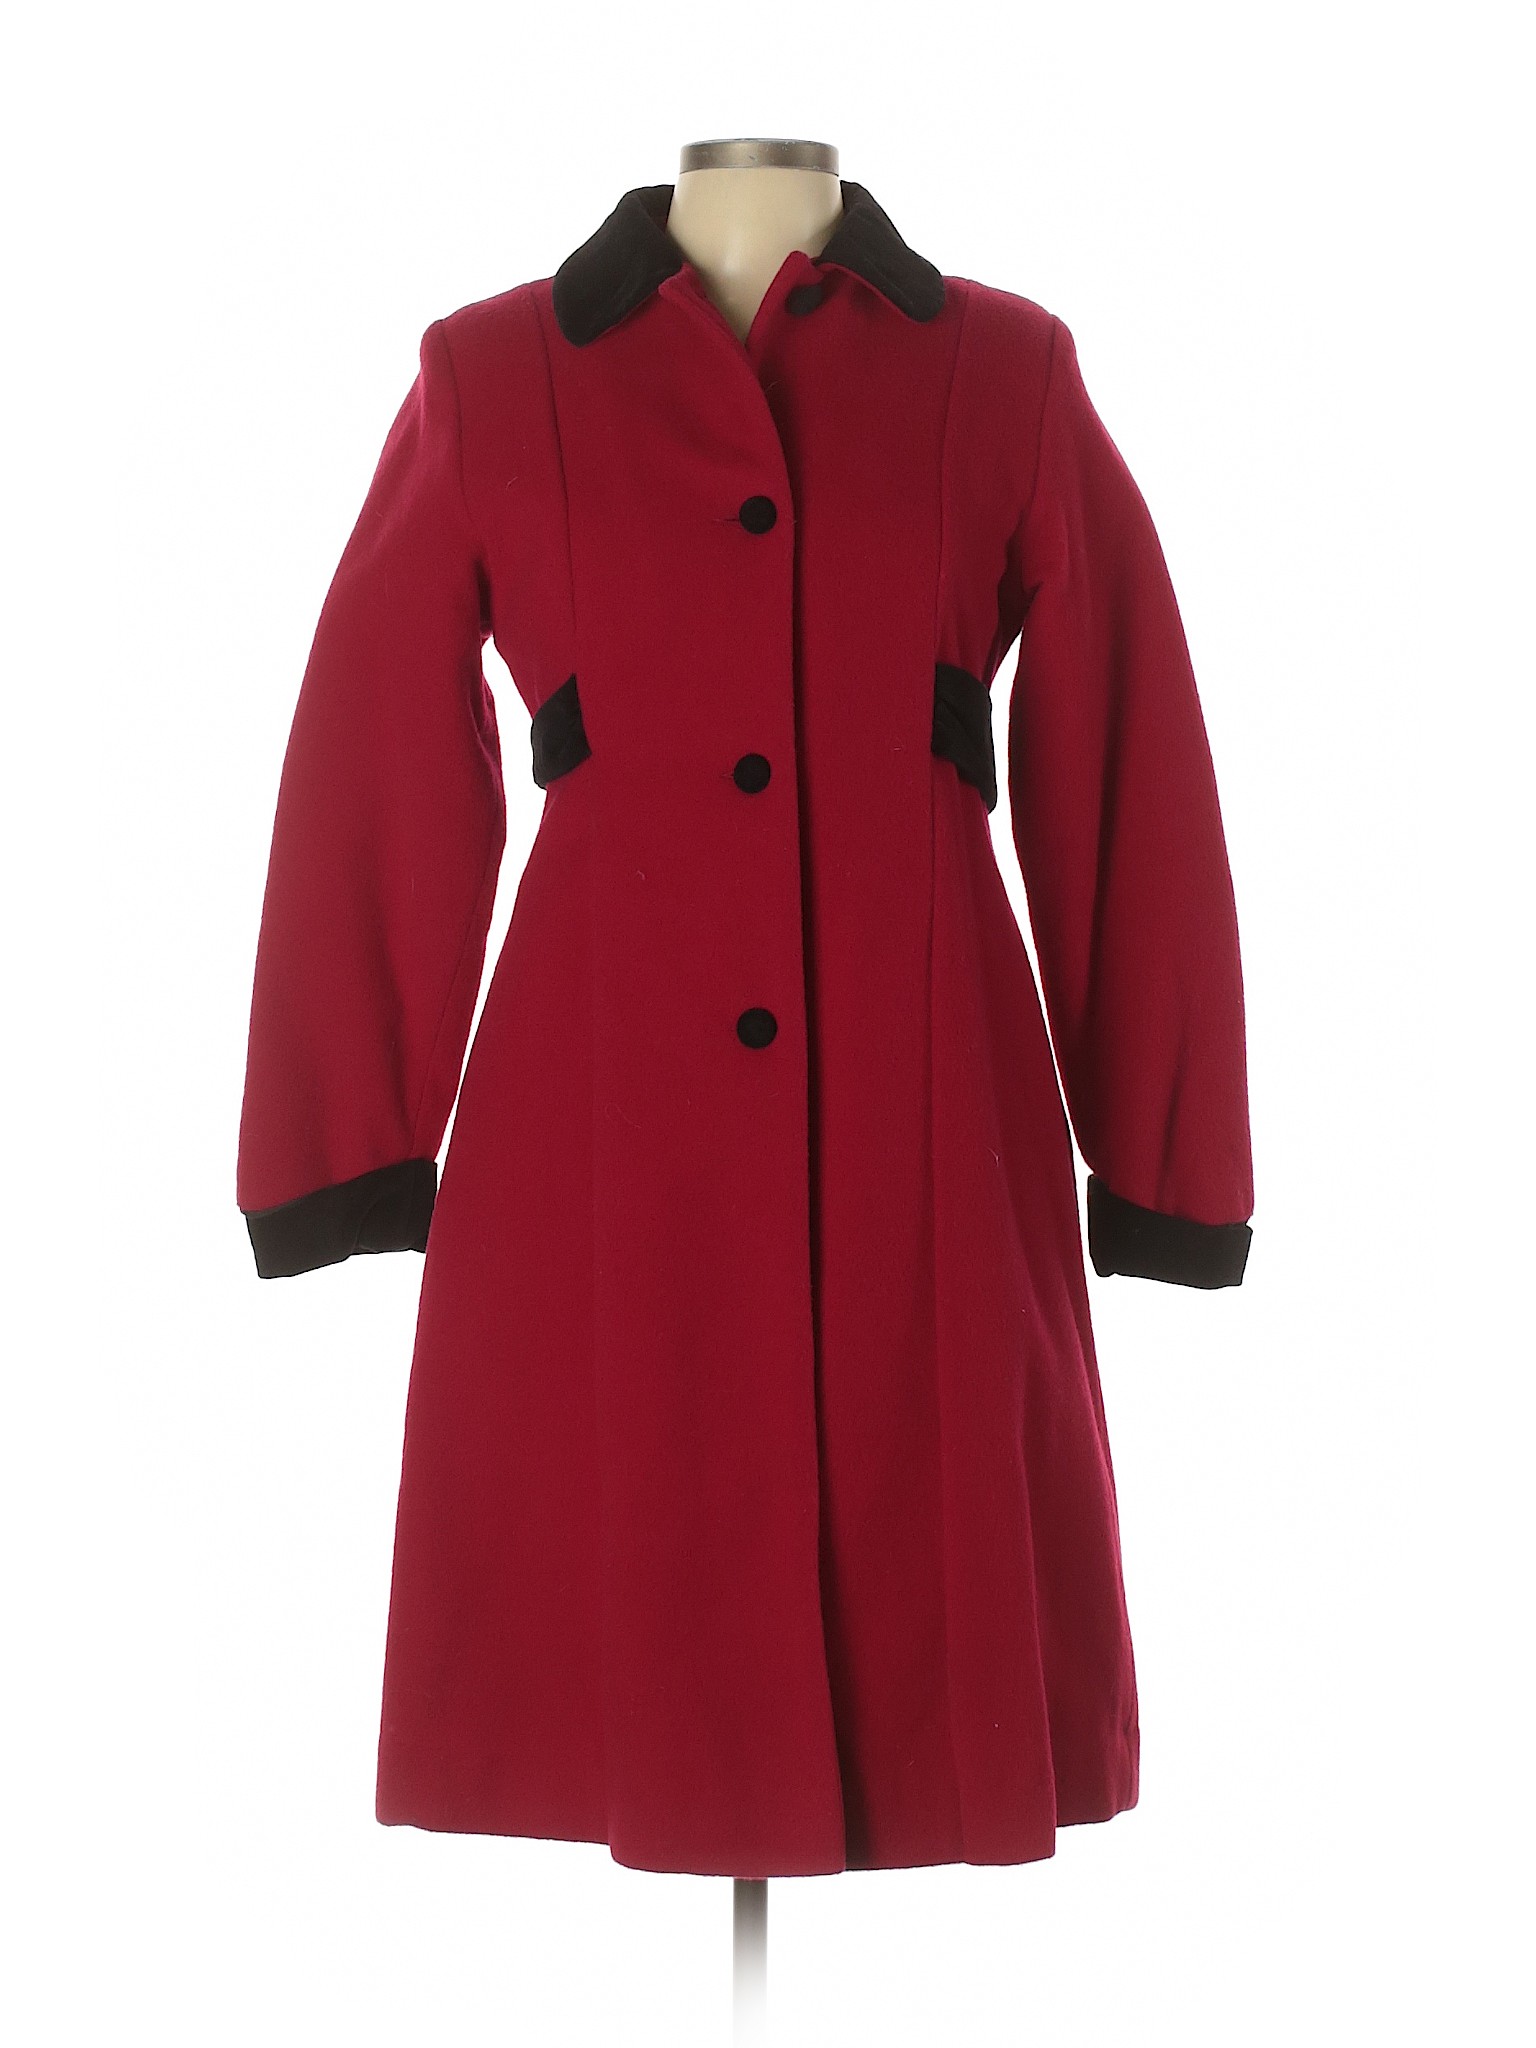 London Fog Women Red Wool Coat 14 | eBay